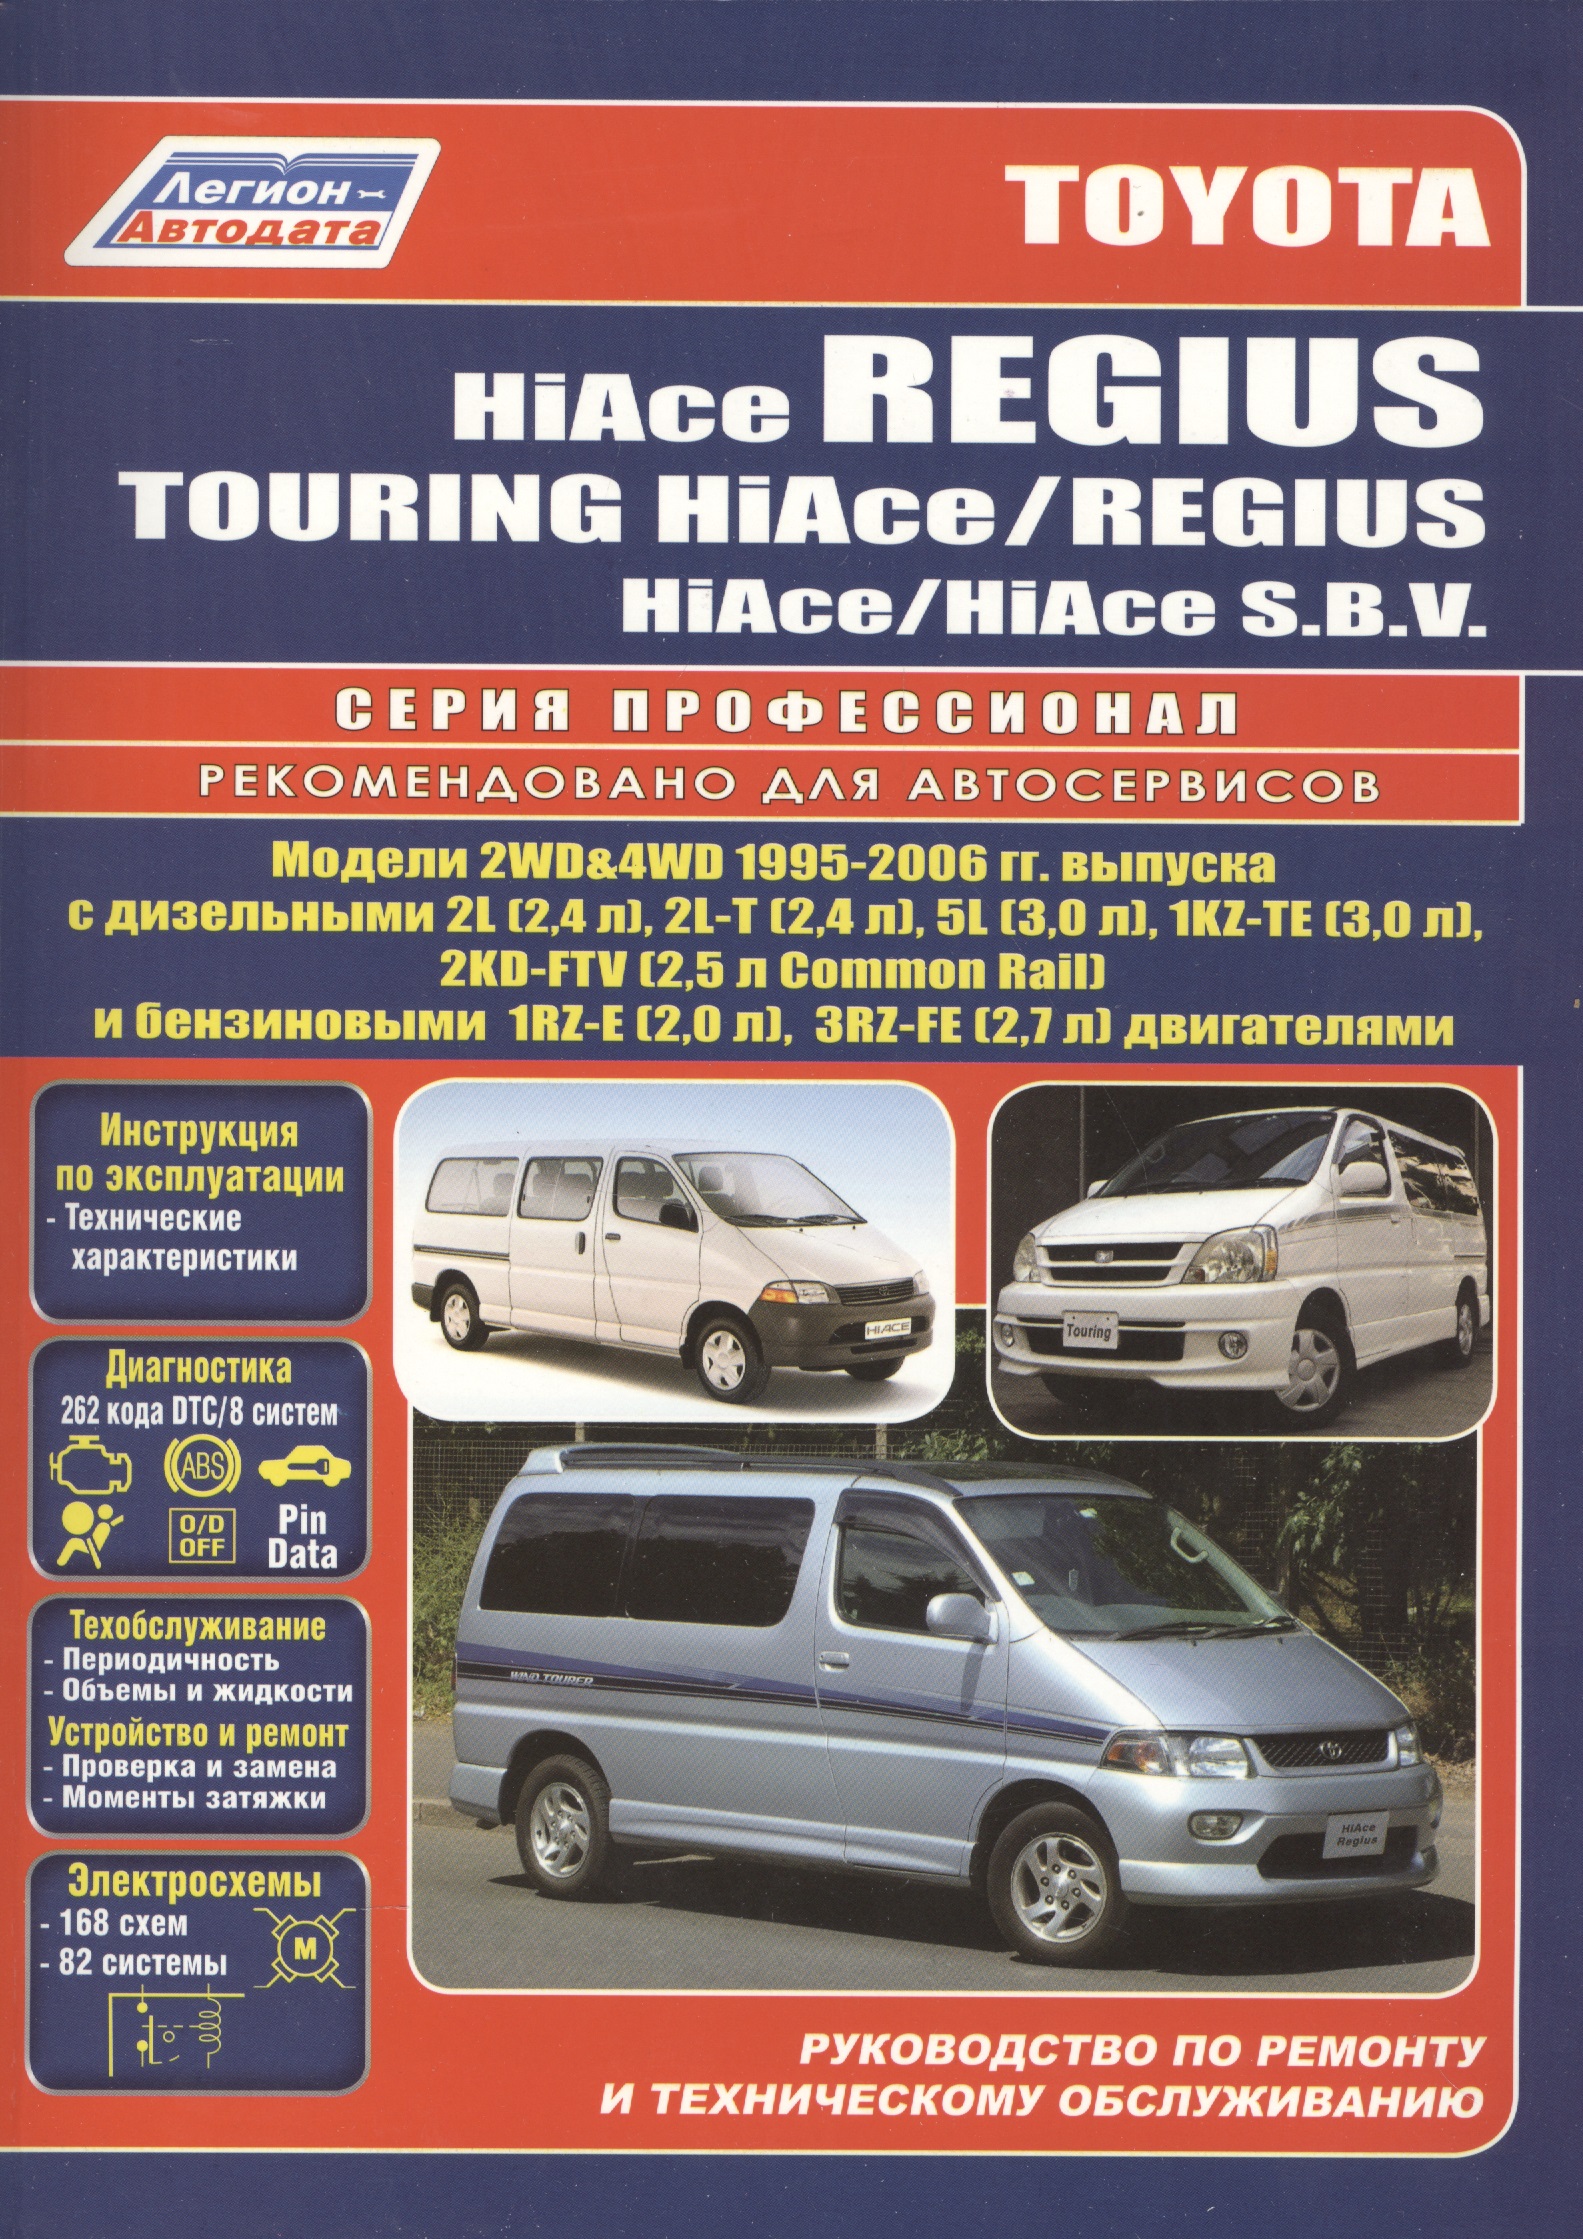 toyota hiace regius hiace sbv модели 2wd Toyota HiAce / Regius / HiAce SBV. Модели 2WD&4WD 1995-2006 гг. выпуска с дизельными 2L (2,4 л.), 2L-T (2,4 л.)… Руководство по ремонту и техническому обслуживанию автомобилей.